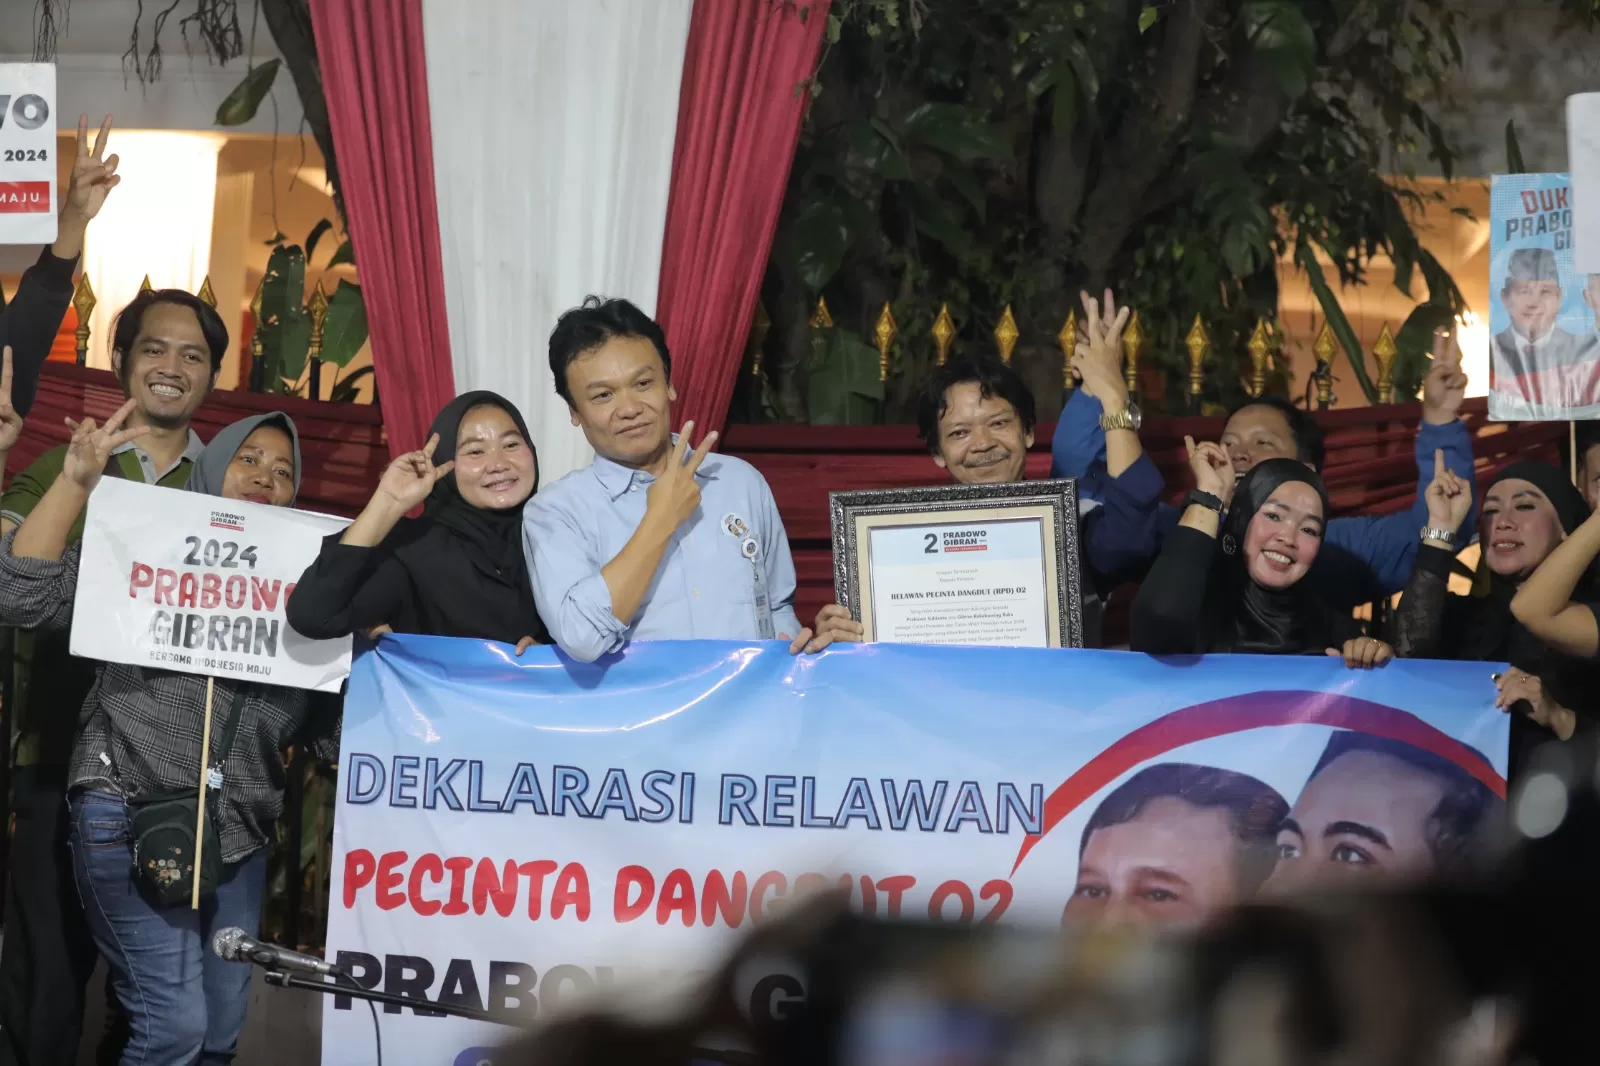 Gelar Deklarasi Dukungan  Untuk Prabowo Gibran, Relawan Pecinta Dangdut 02 Ingin Pekerja Seni Diperhatikan